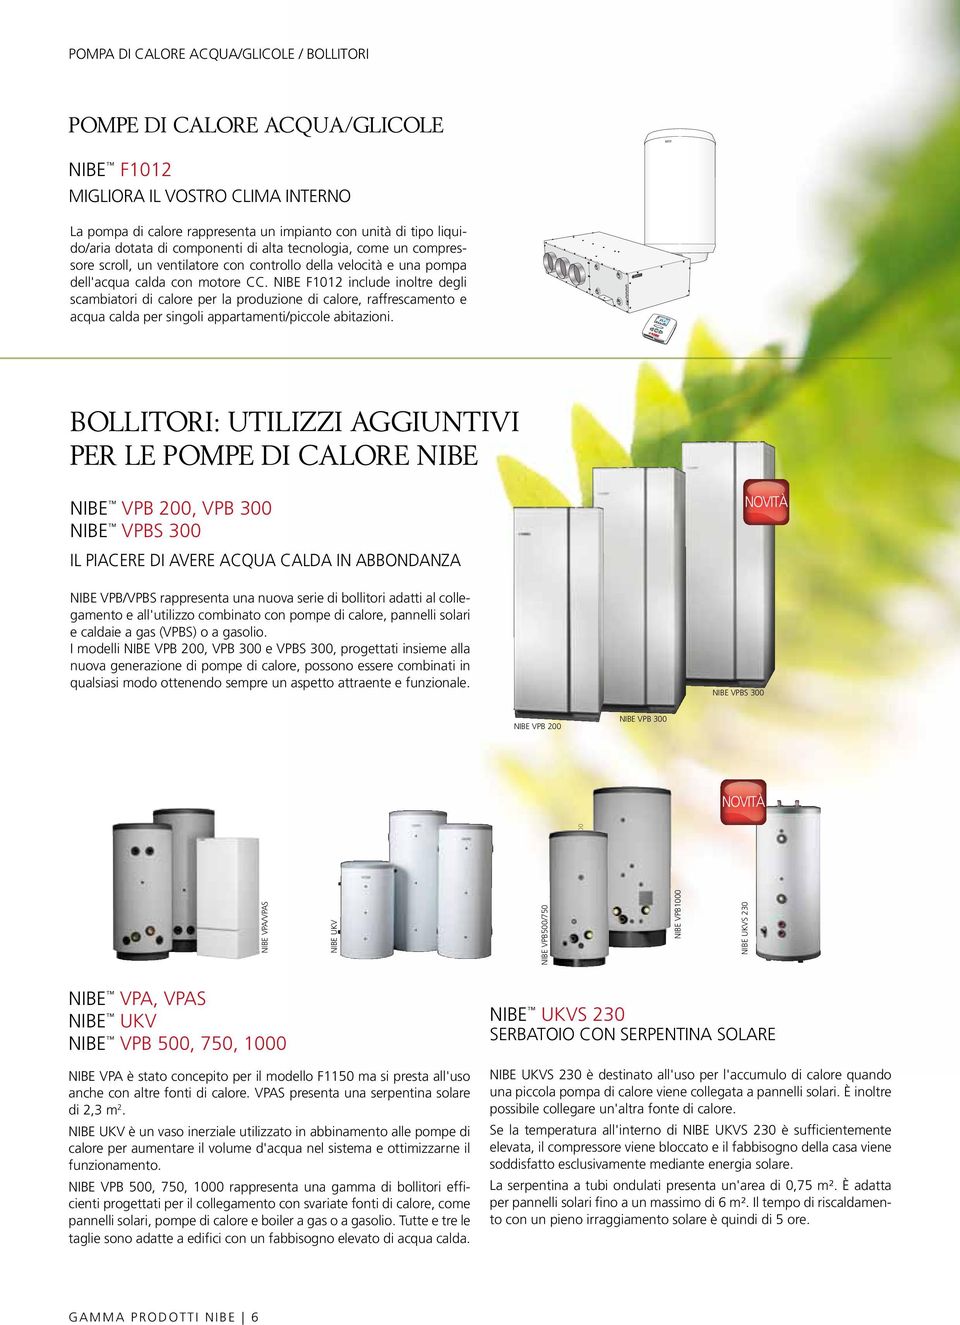 NIBE F1012 include inoltre degli scambiatori di calore per la produzione di calore, raffrescamento e acqua calda per singoli appartamenti/piccole abitazioni.